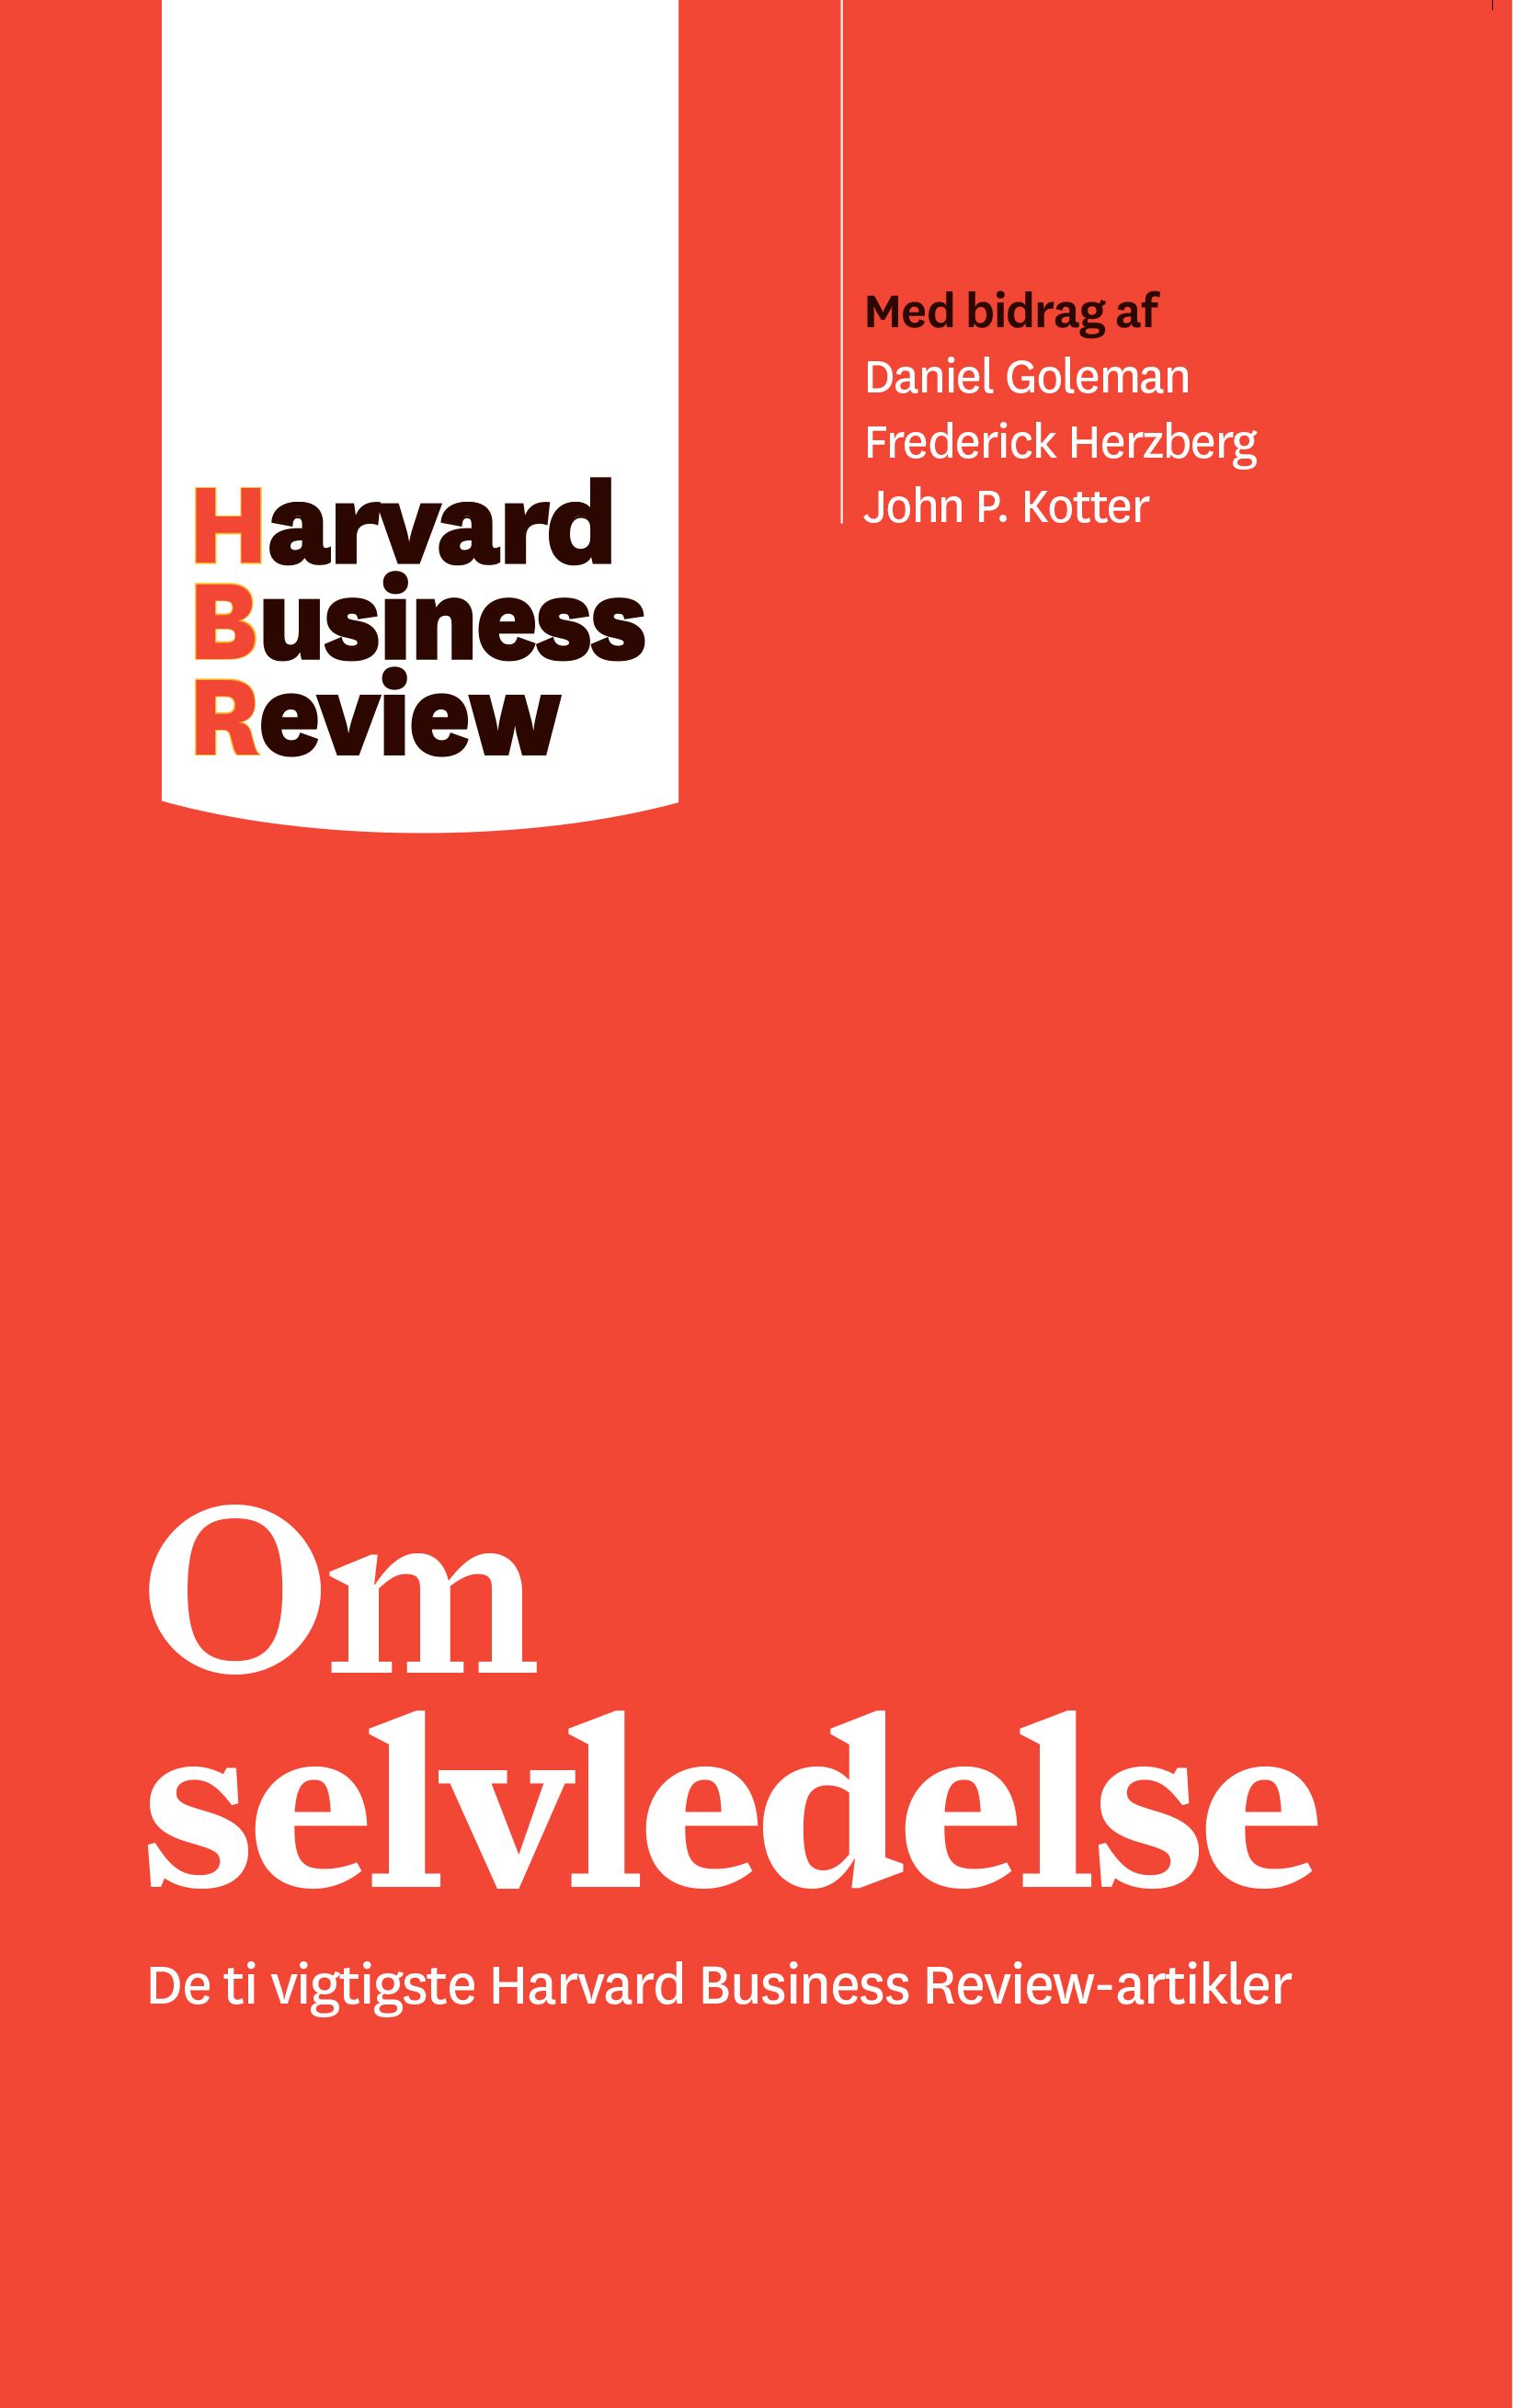 Om selvledelse, e-bok av Harvard Business Review